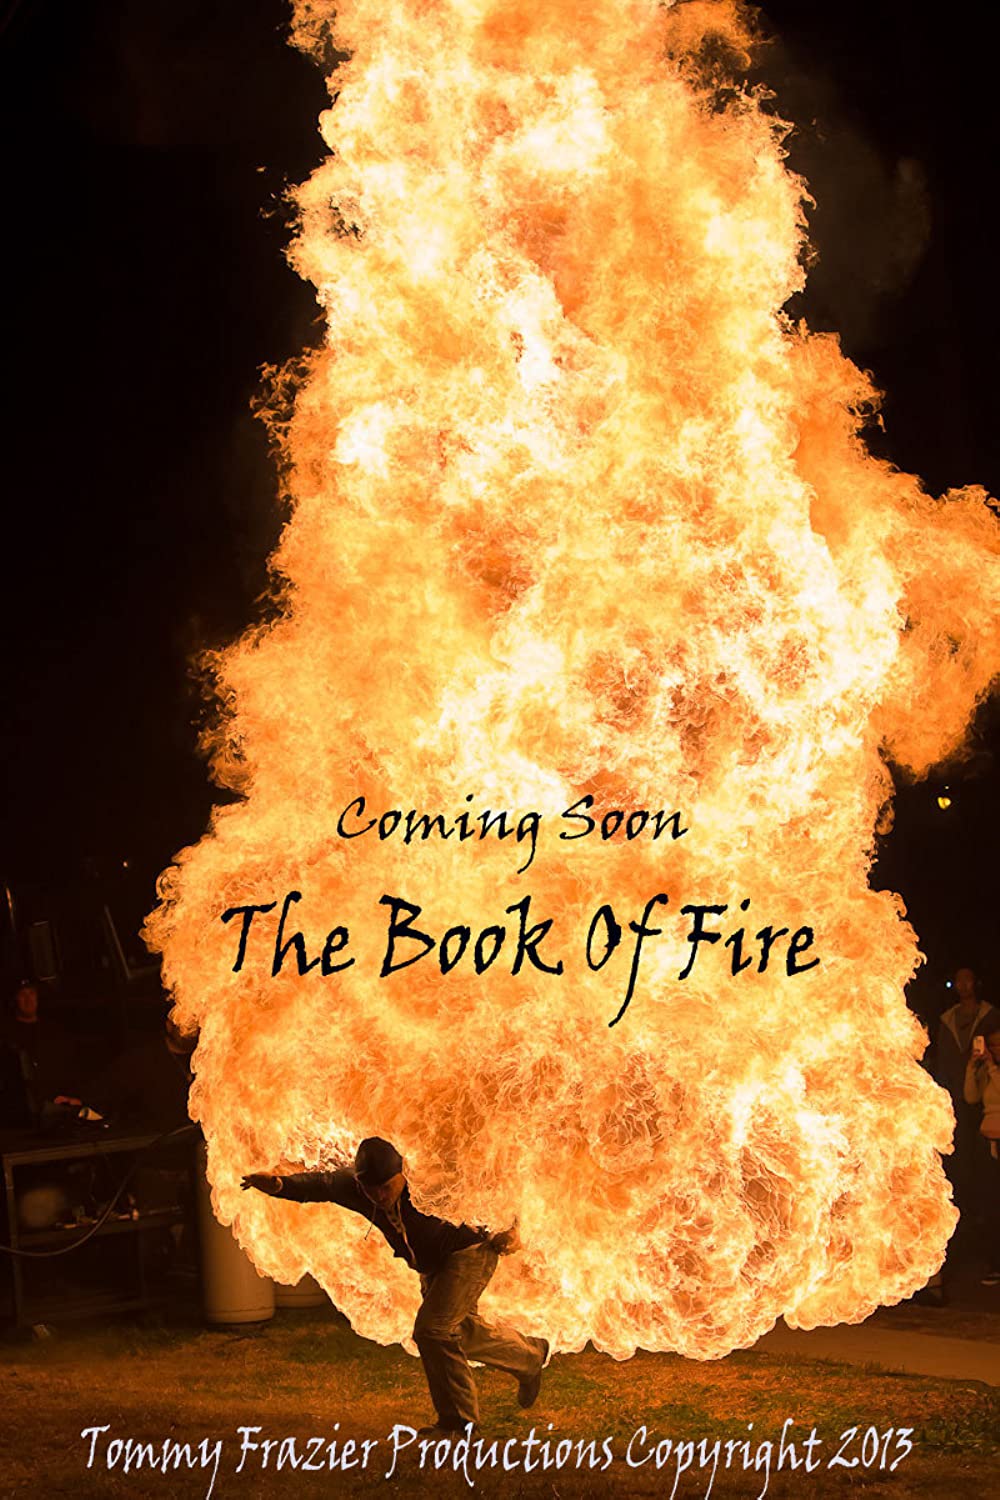 Filmbeschreibung zu Book of Fire